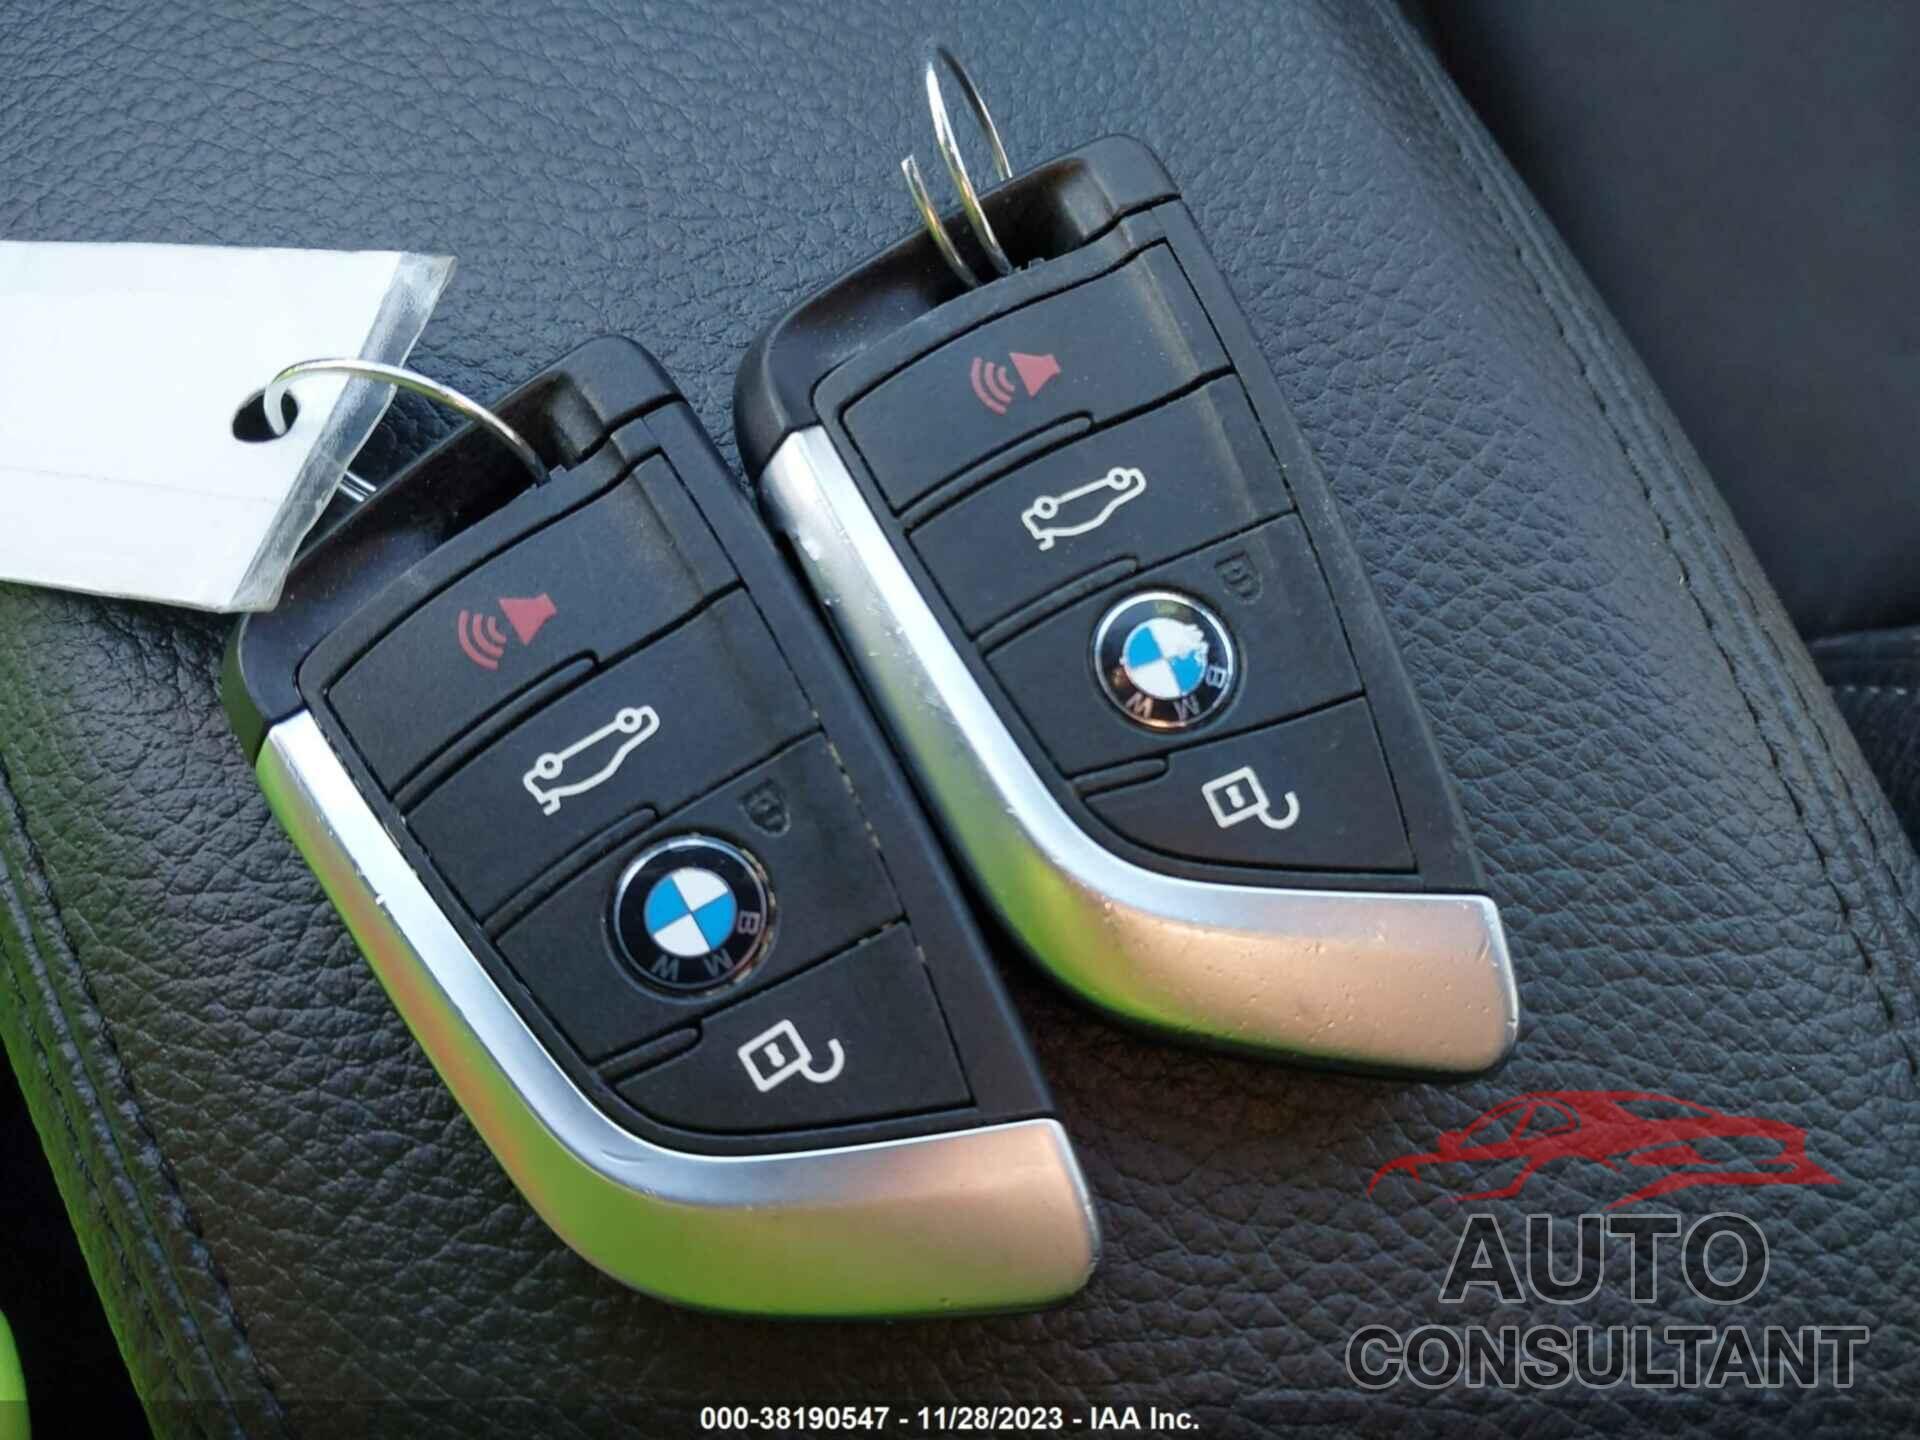 BMW X1 2018 - WBXHU7C30J5H42480